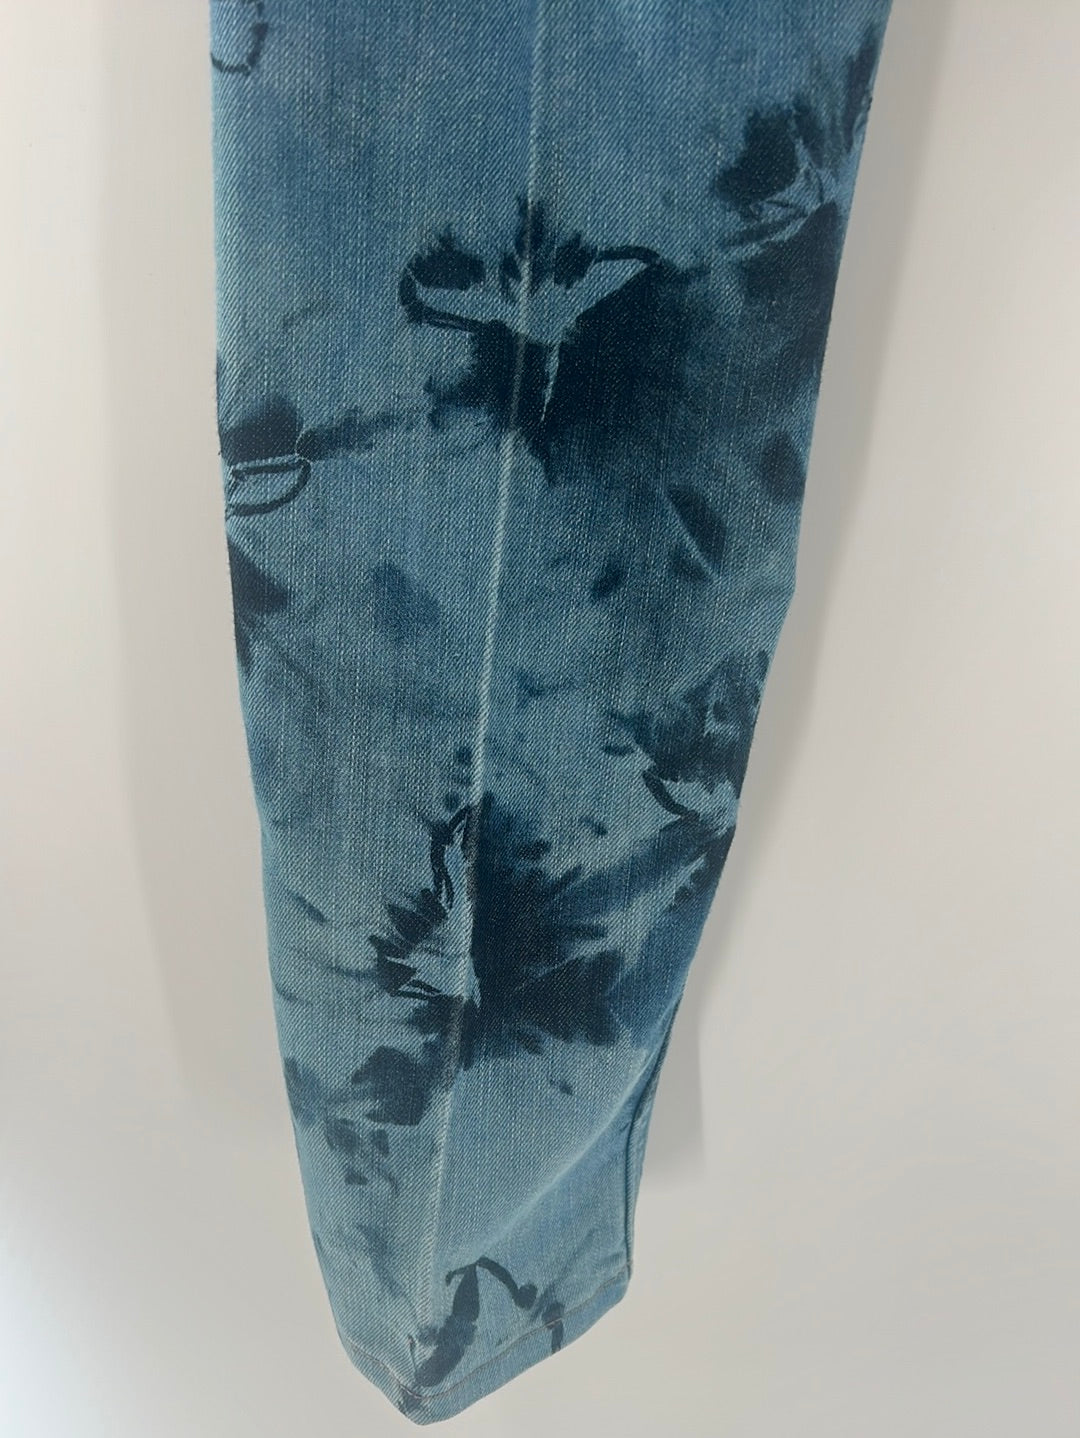 Levi Strauss Urban Outfitters 511 Slim tie-dye (size 28 x 28 / 16 Reg)